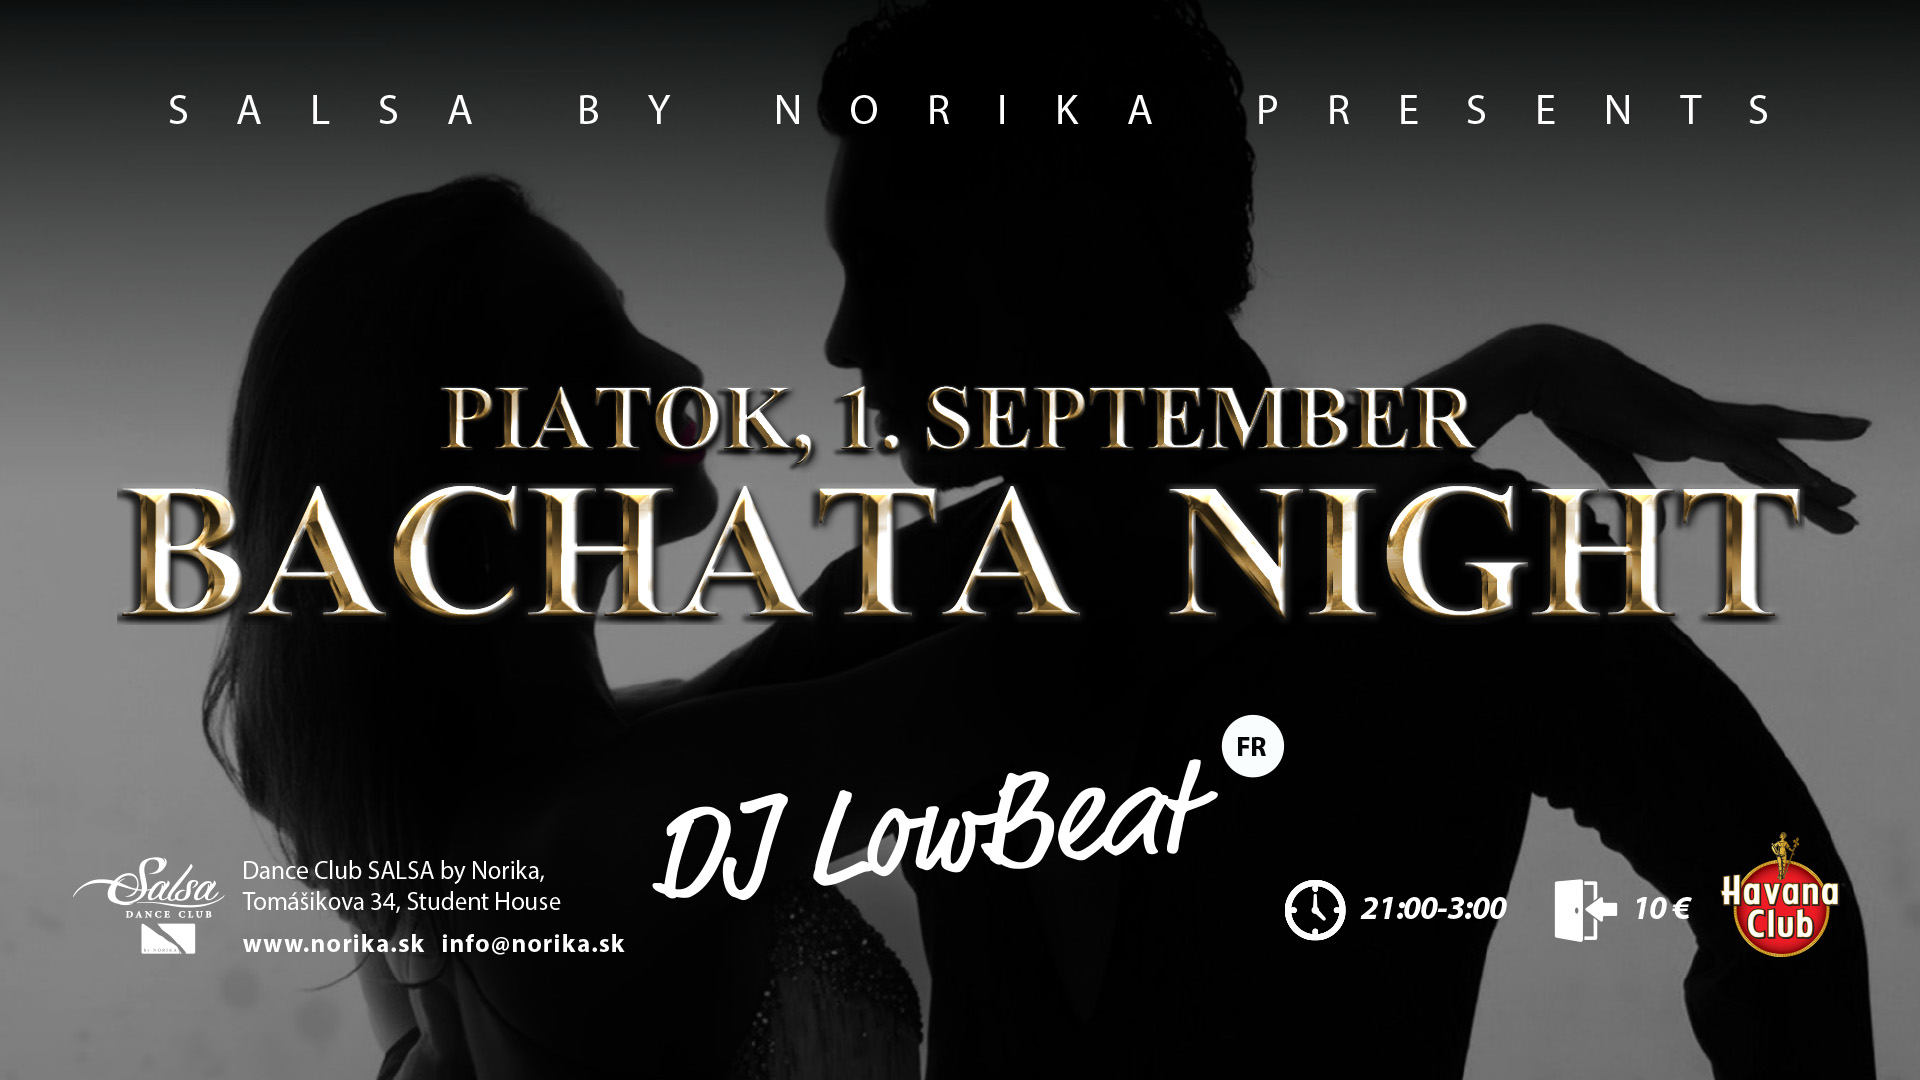 Bachata Night Salsa by Norika